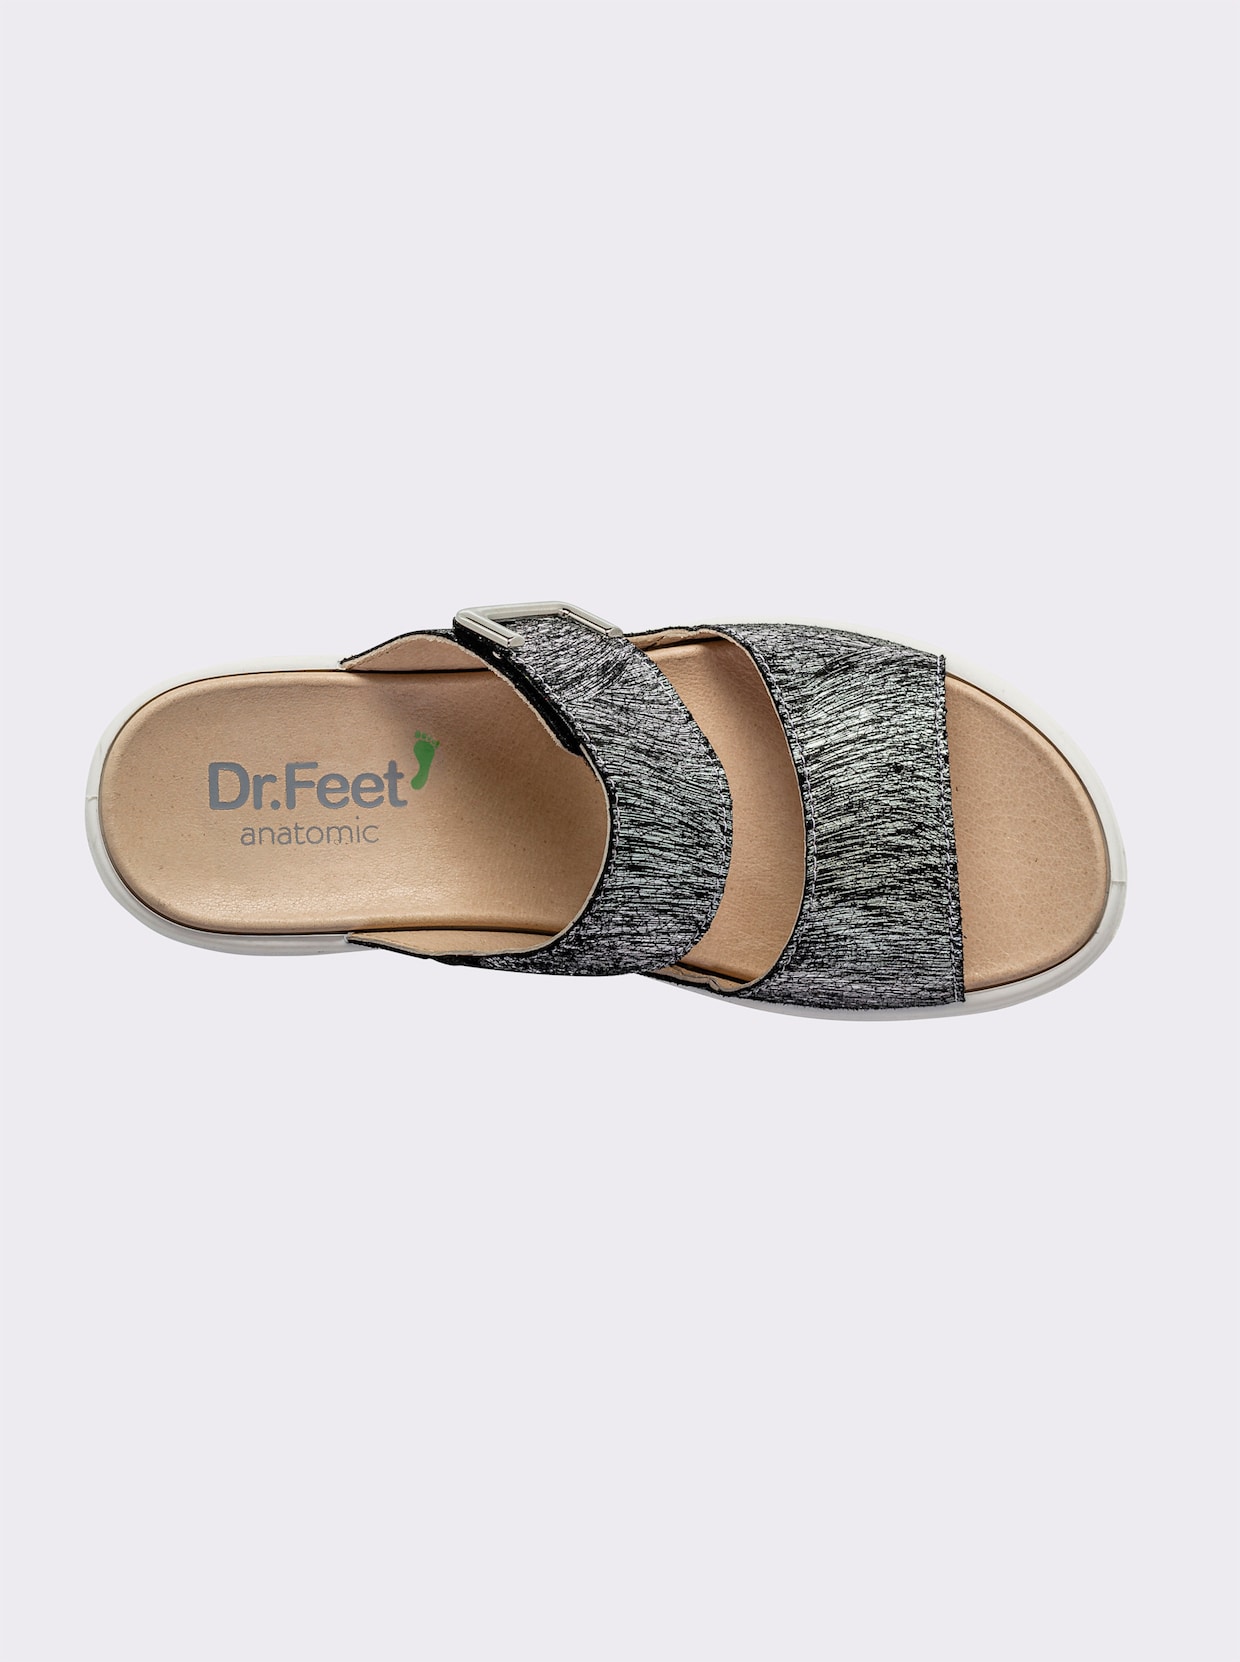 Dr. Feet Pantolette - anthrazit